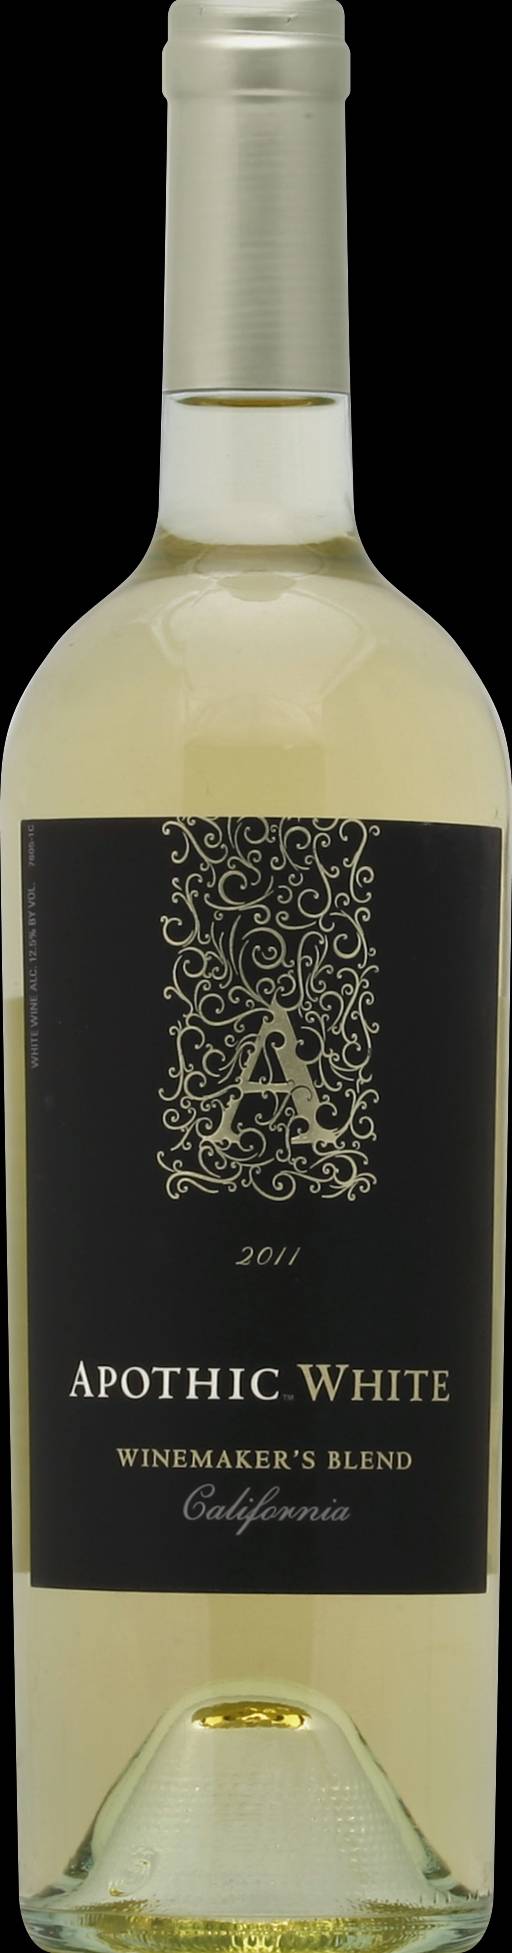 Apothic California Winemaker's White Wine 2011 (750 ml)